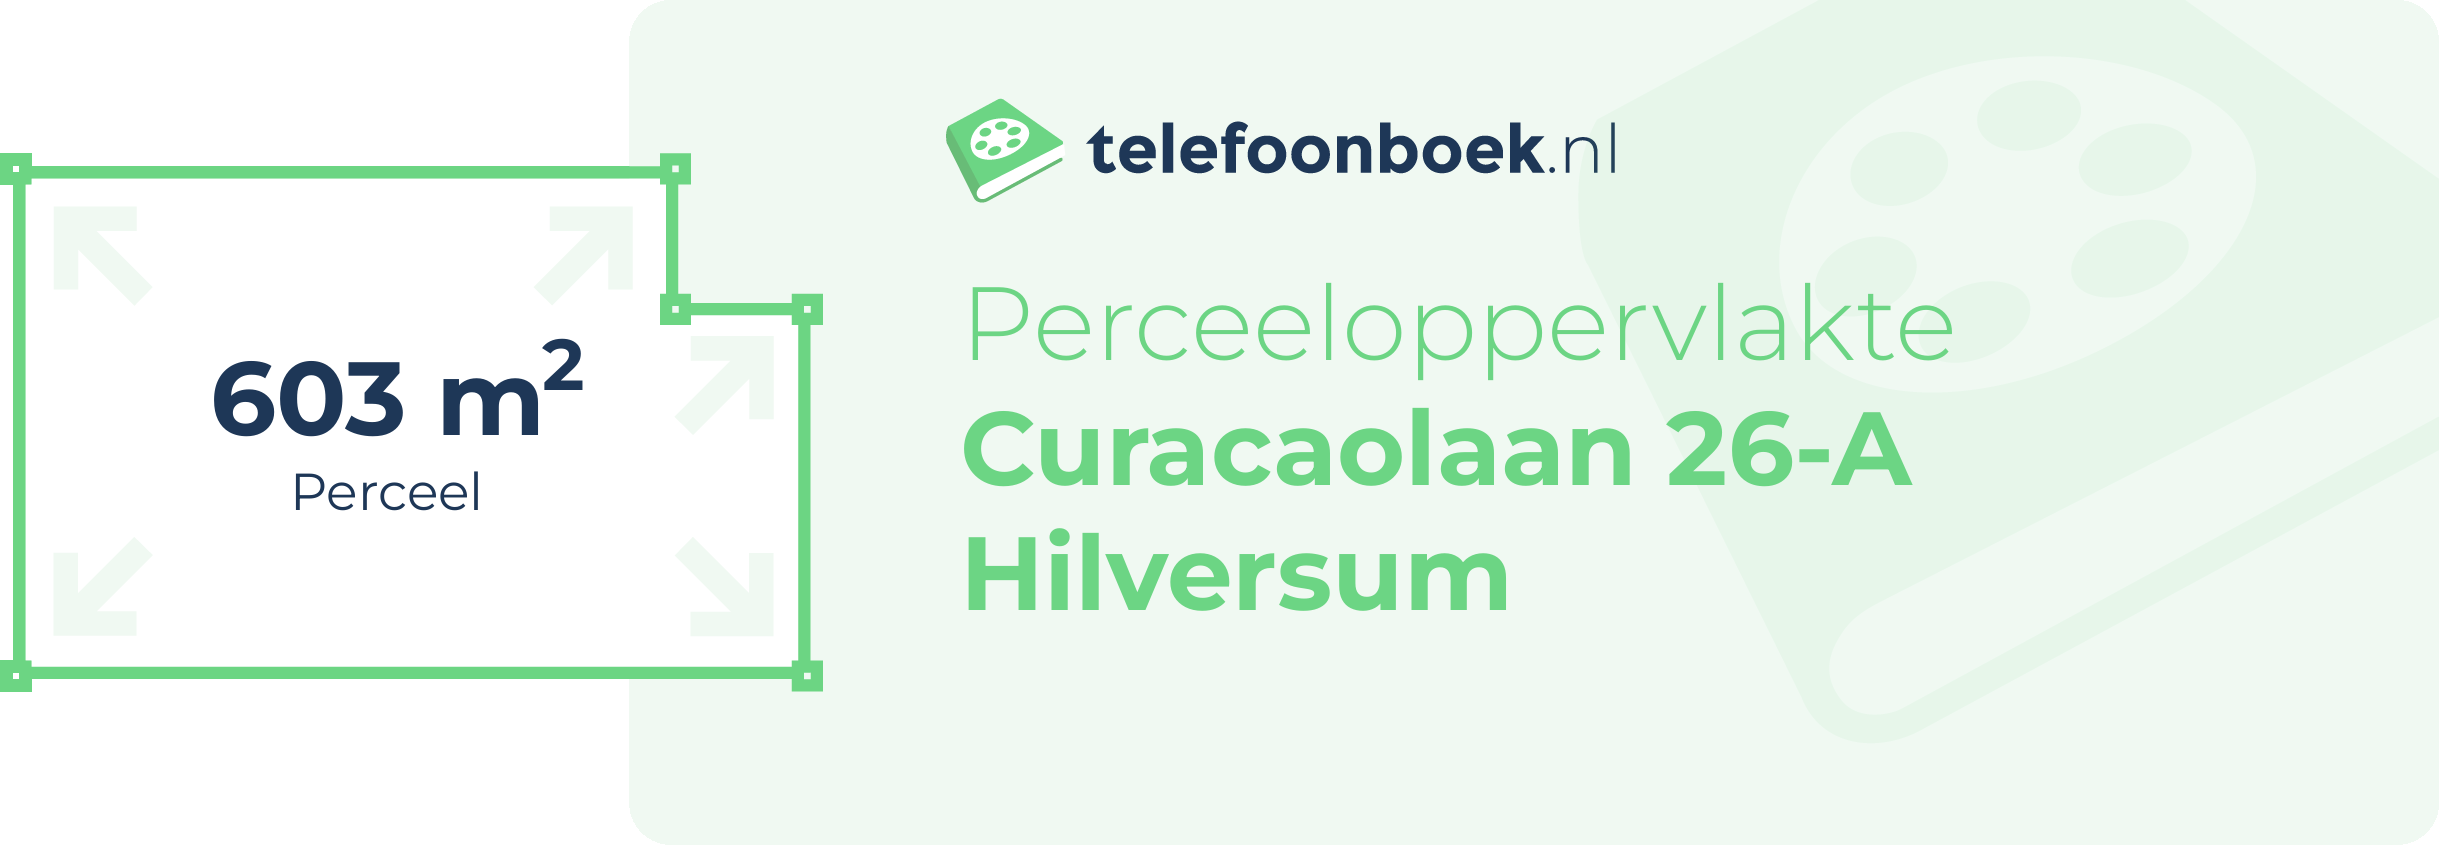 Perceeloppervlakte Curacaolaan 26-A Hilversum